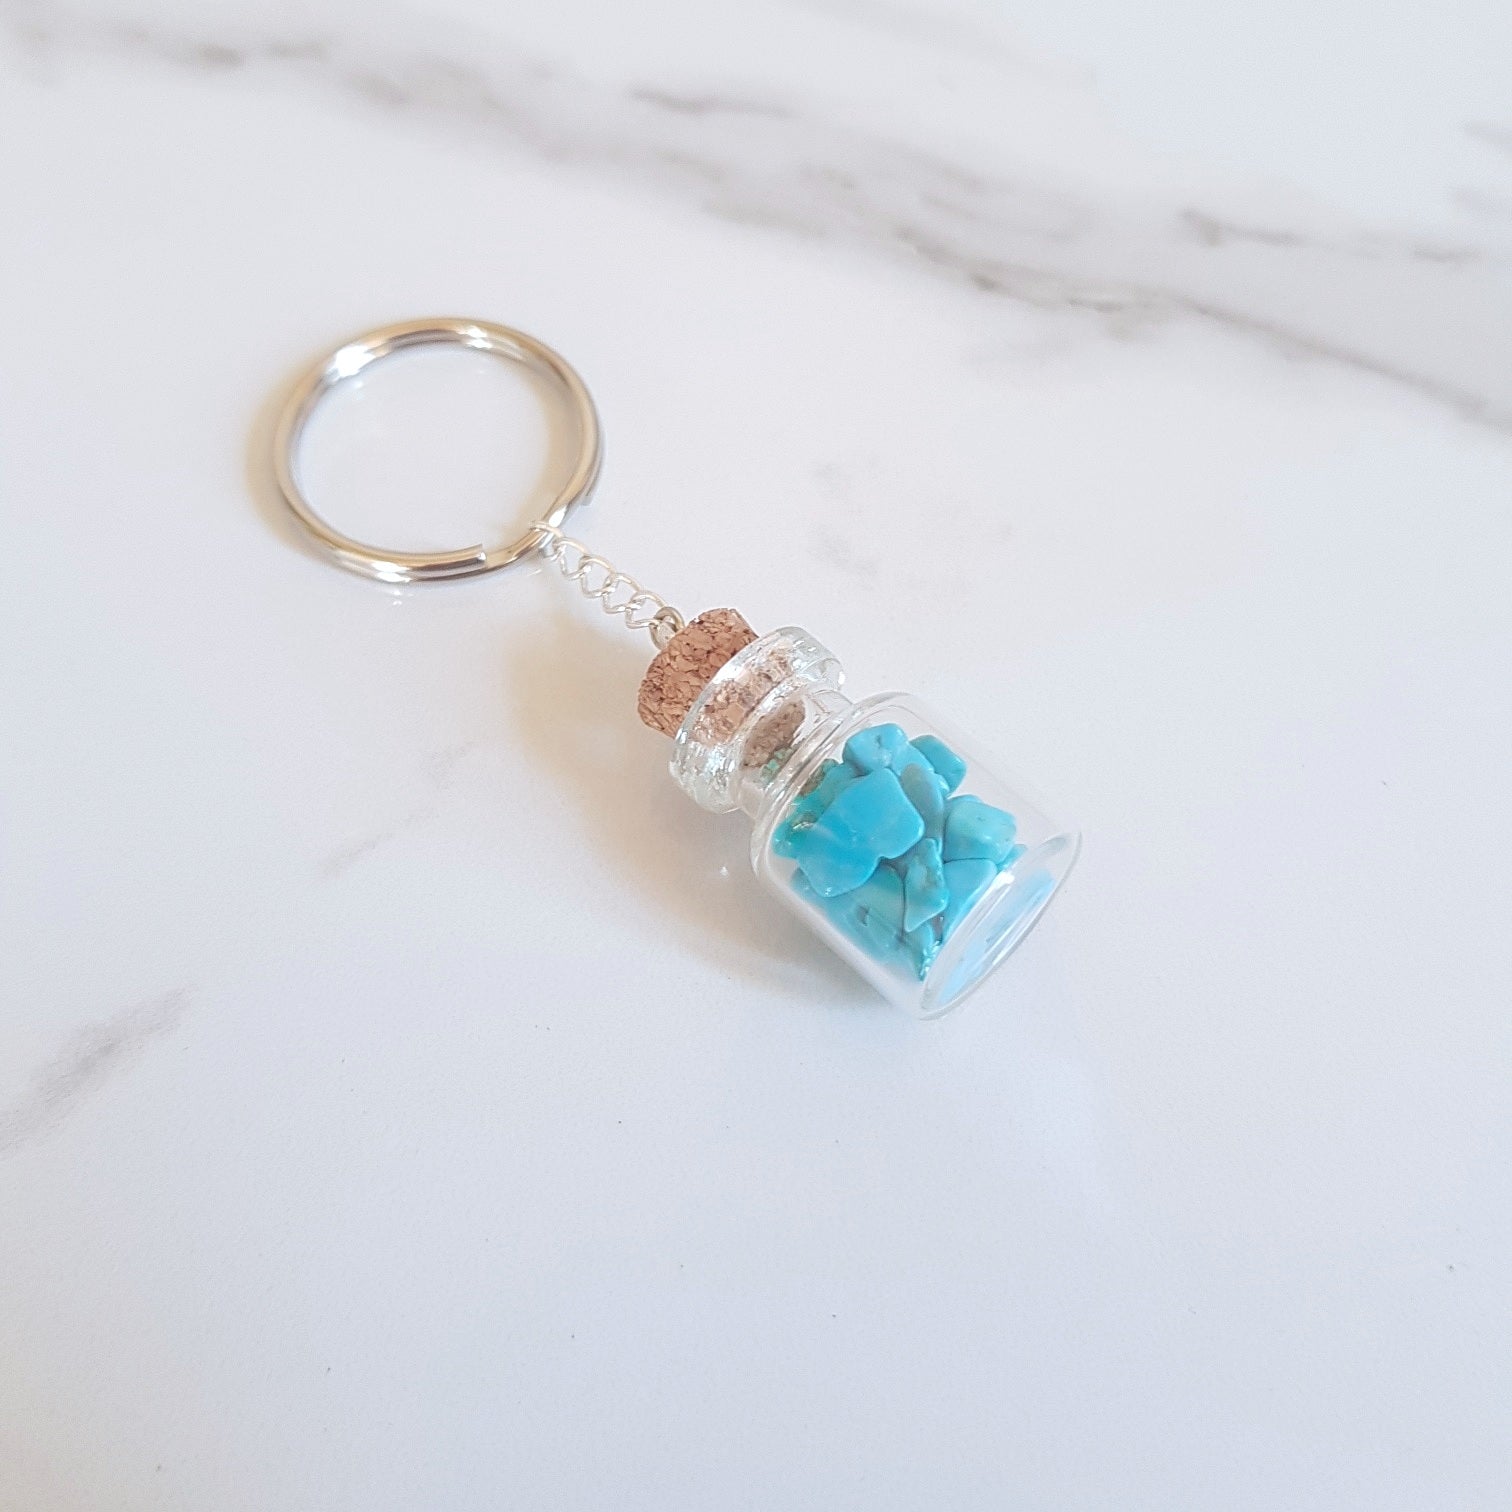 Bottled Gemstone Keyring - Turquoise